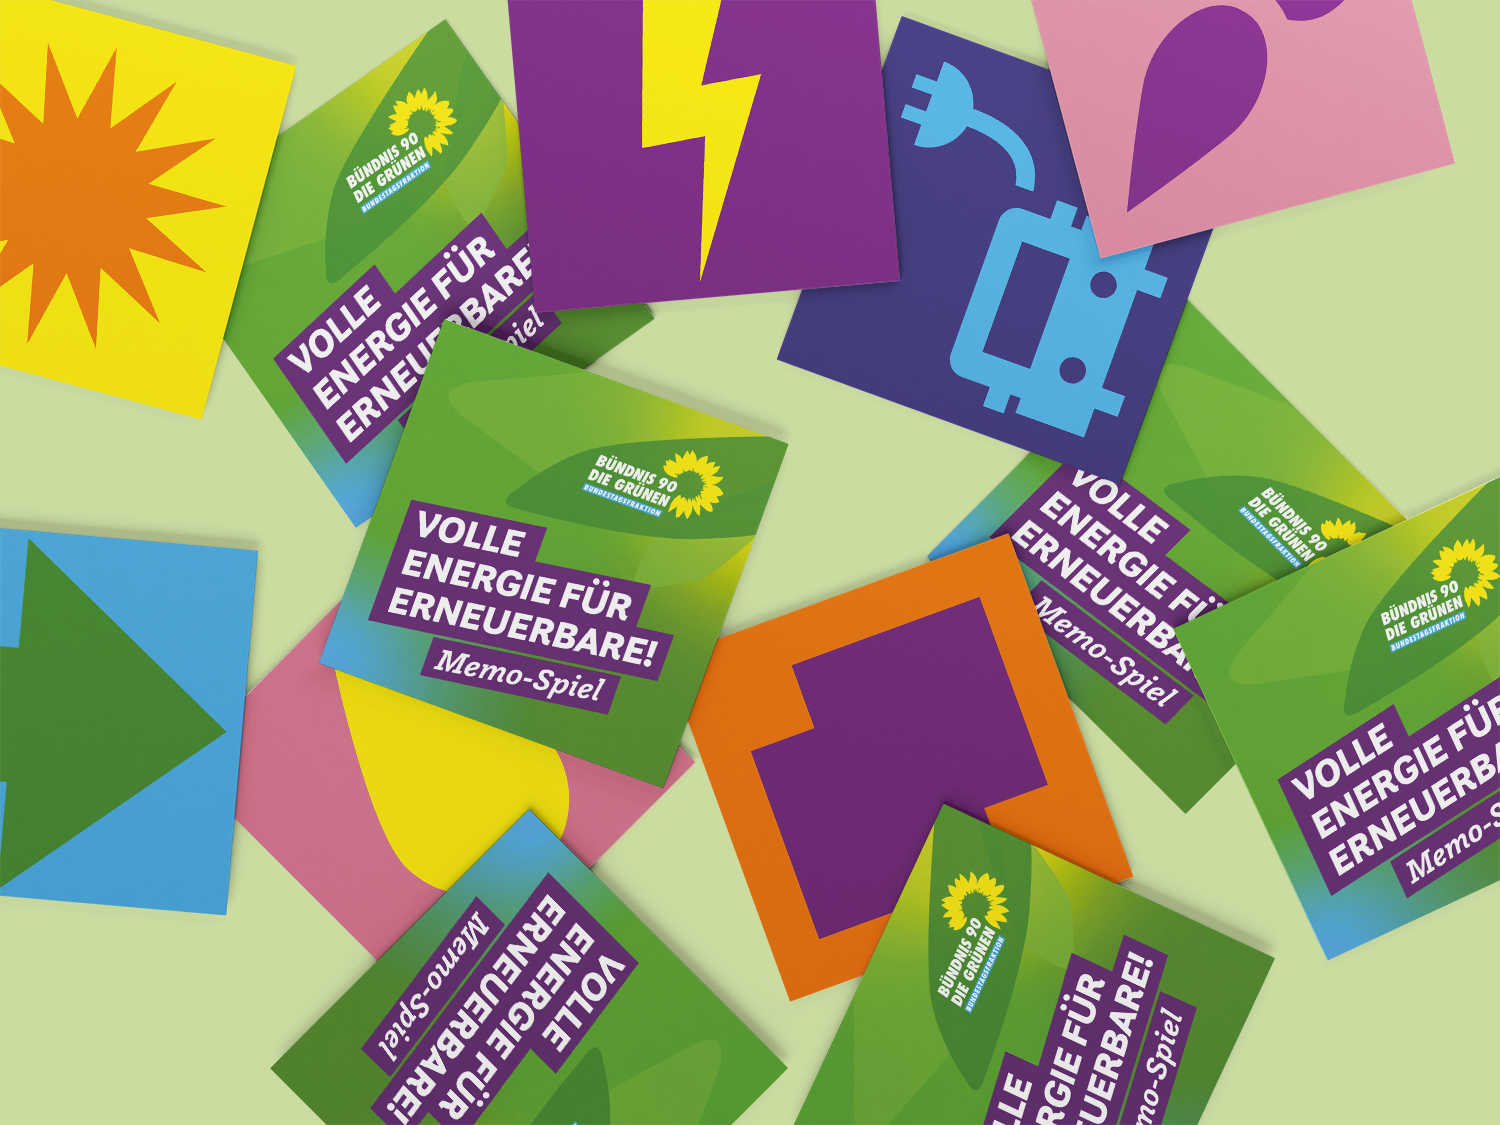 Memo-Spiel Karten mit Energiewende Symbolen ausgebreitet auf einem hellgrünen Untergrund.